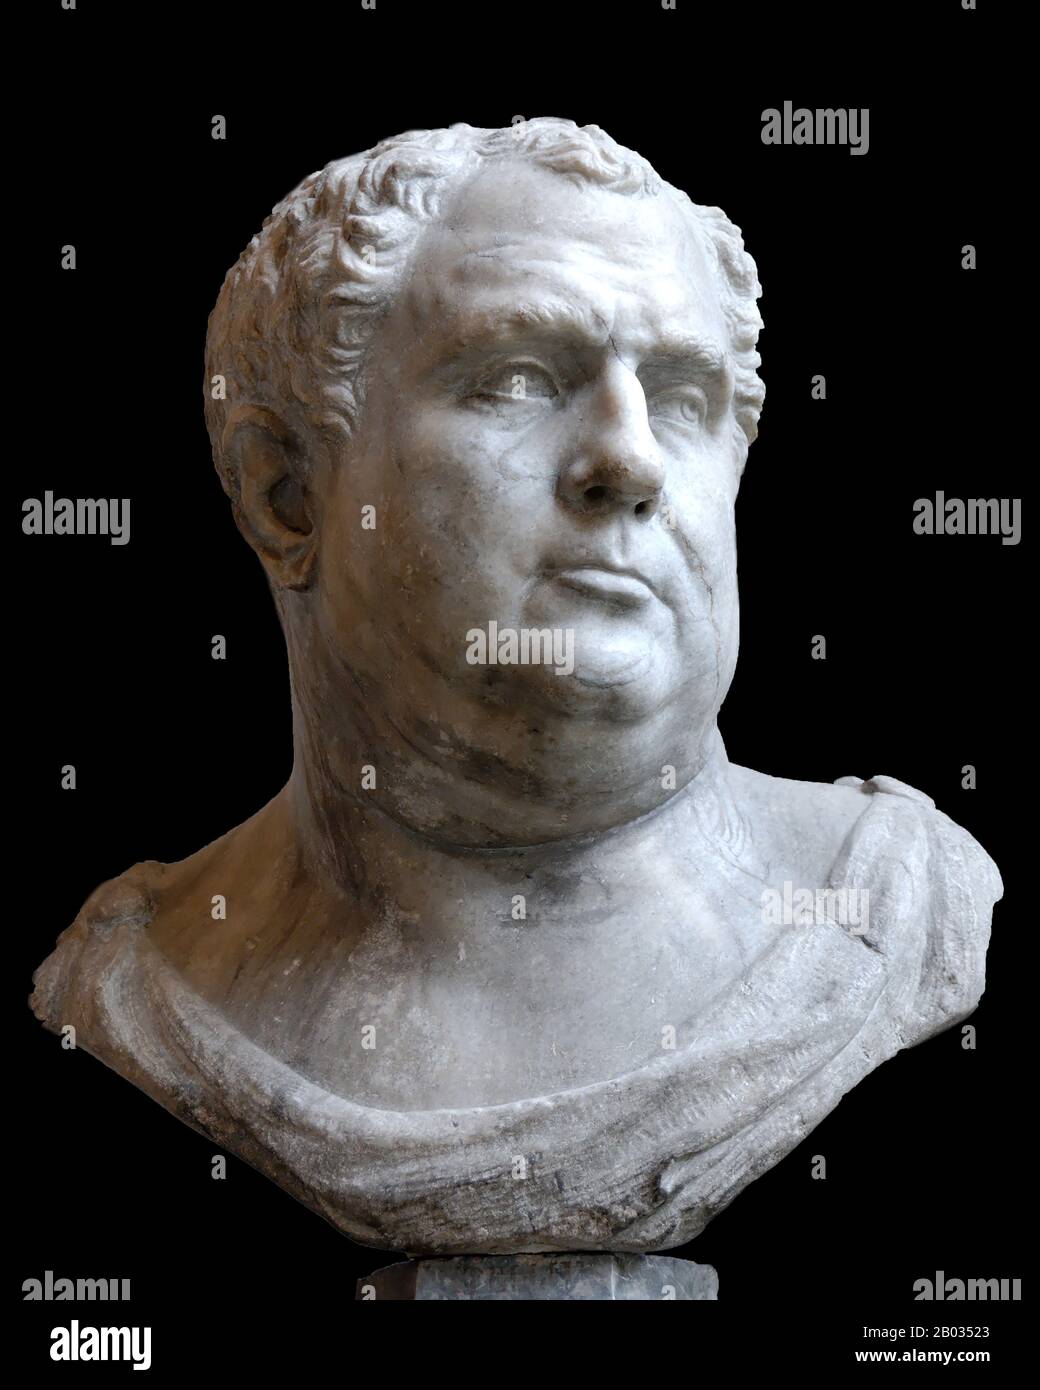 Der dritte Kaiser, der während des tumultartigen Jahres der Vier Kaiser regieren konnte, Vitellius begann seine Karriere als Consul zunächst im Jahr 48 CE und erhielt schließlich von Kaiser Galba das Kommando über die Armeen Germaniens Inferiores. Von dort aus begann er sein Machtangebot gegen Galba und die anderen Kläger. Er führte 69 v. Chr. erfolgreich eine militärische Revolution gegen Galbas Nachfolger Otho, marschierte nach Rom und wurde Kaiser, obwohl er in der gesamten römischen Welt nie als solcher anerkannt wurde. Seine Männer sollen legenziös und rau gewesen sein, wobei Rom in Massaker und Krawalle verstrickt wird, dekaden Stockfoto